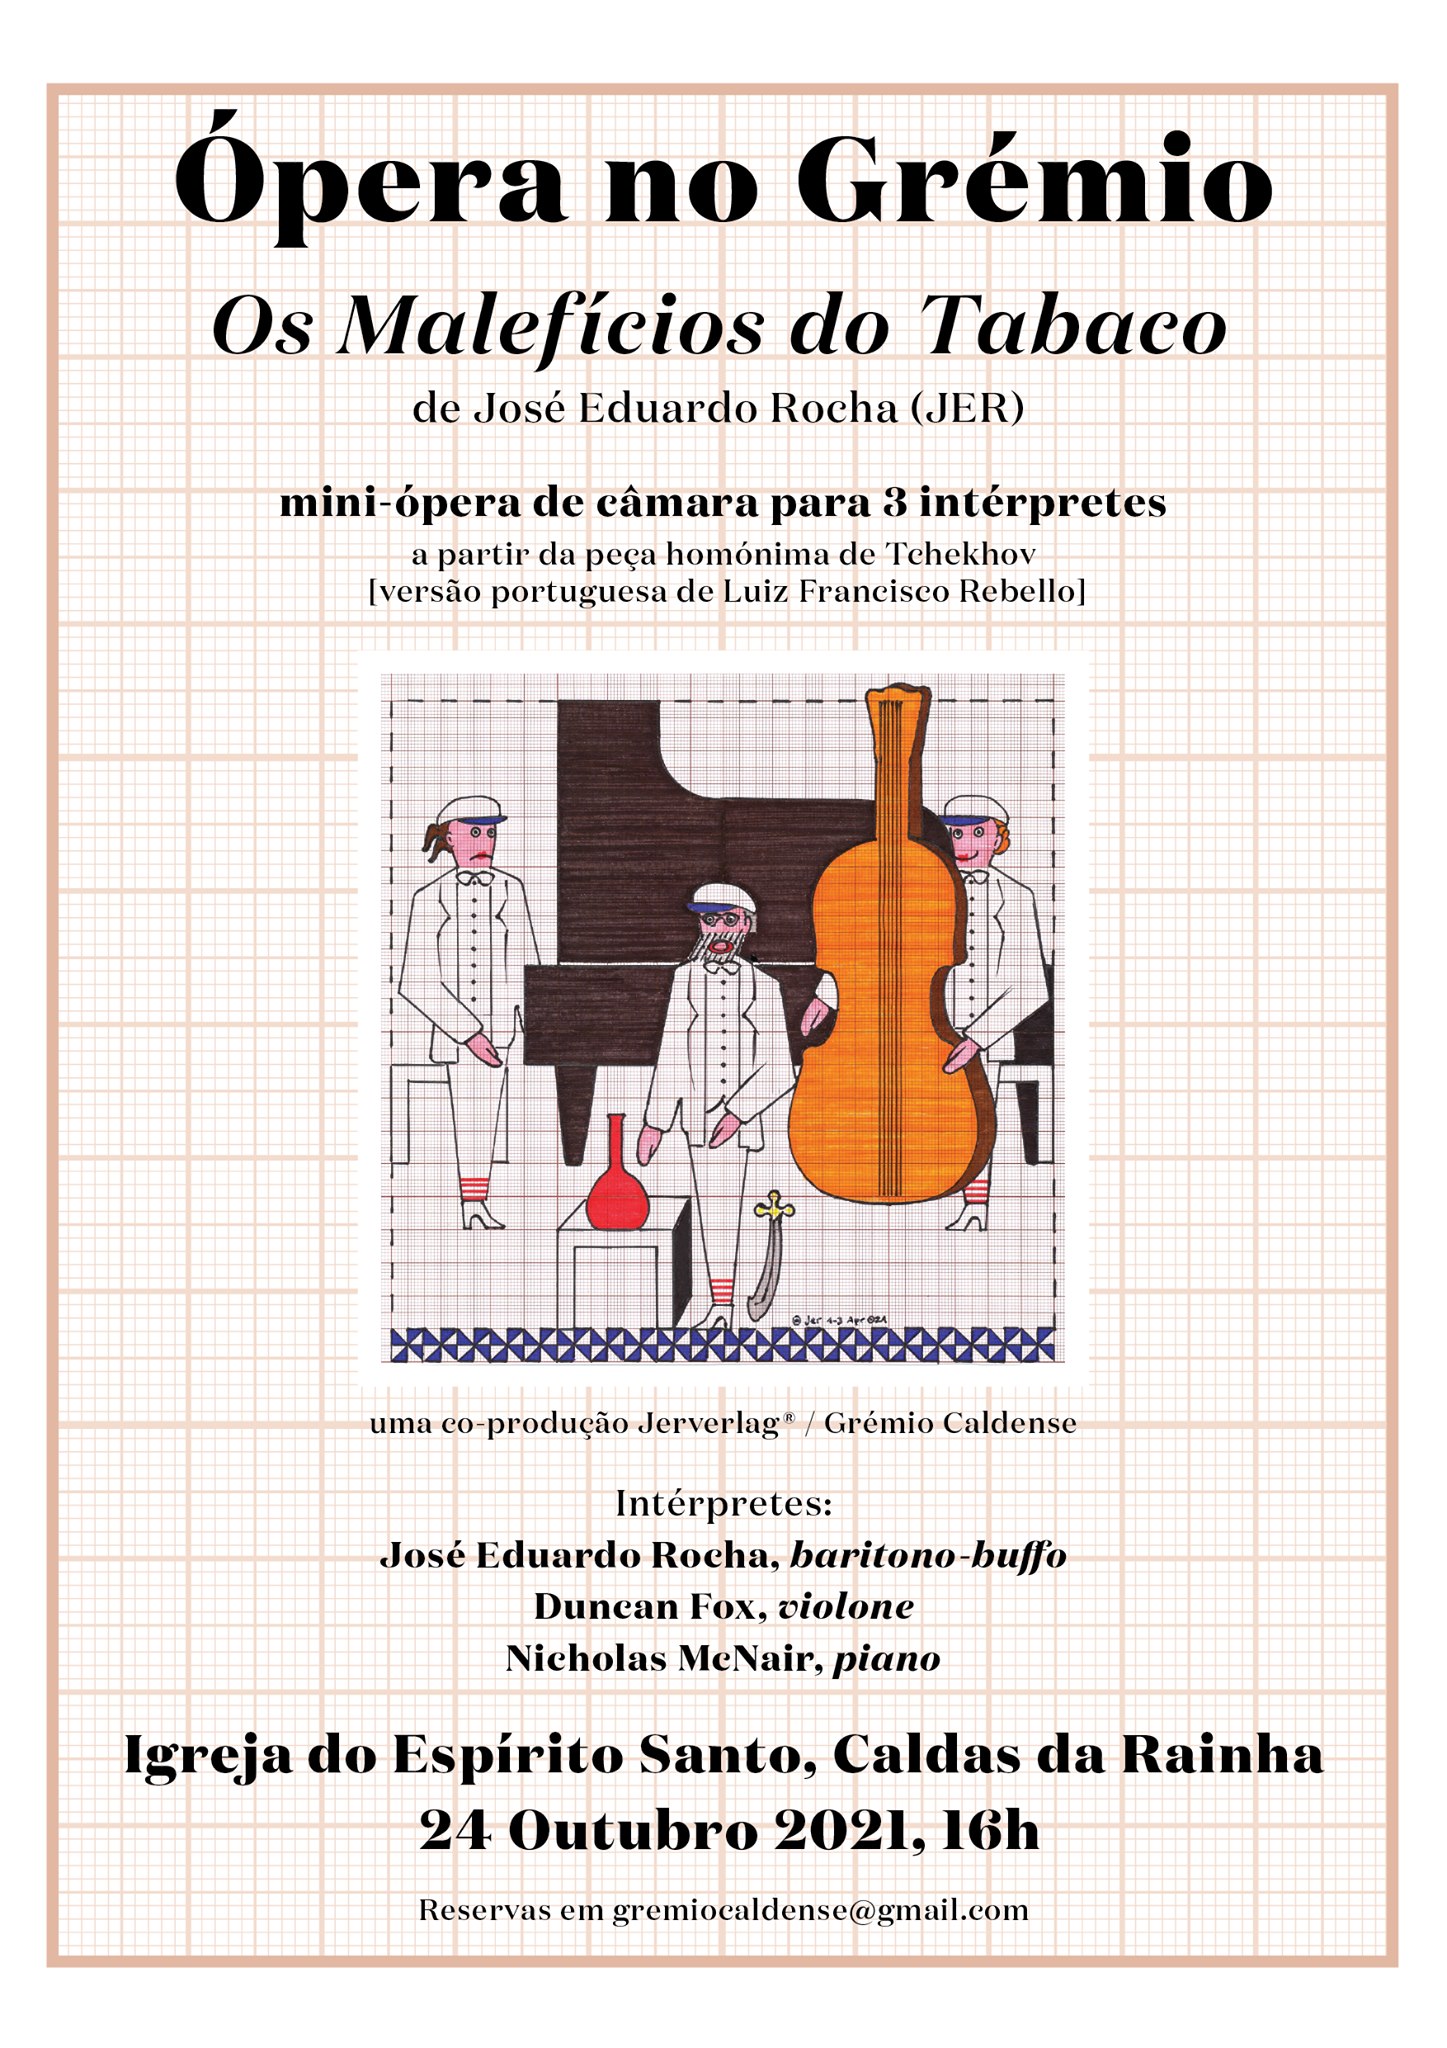 Ópera no Grémio - Os malefícios do Tabaco de José Eduardo Rocha (JER)